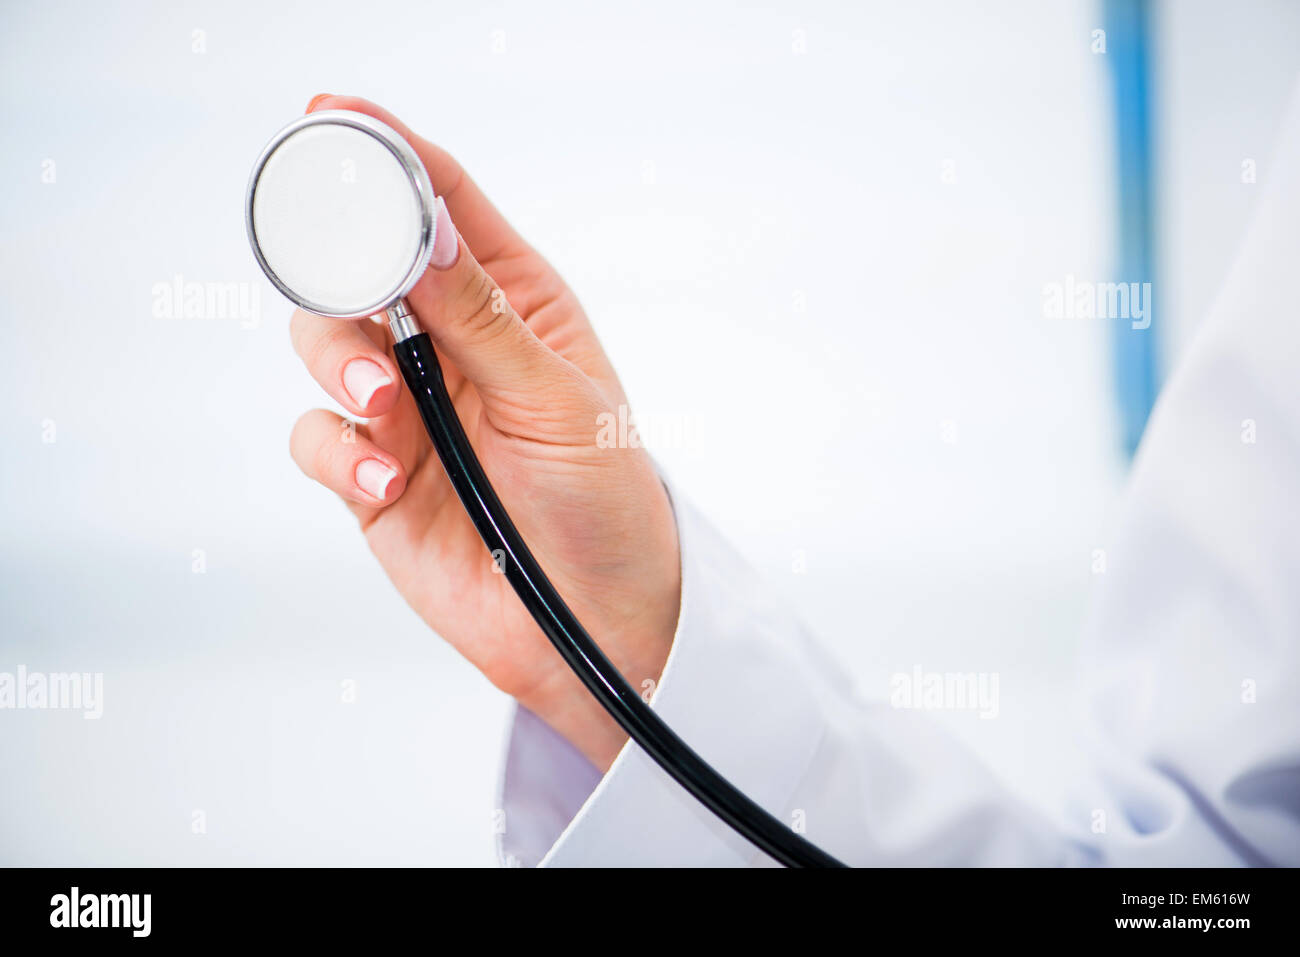 Hand holding stethoscope Stock Photo